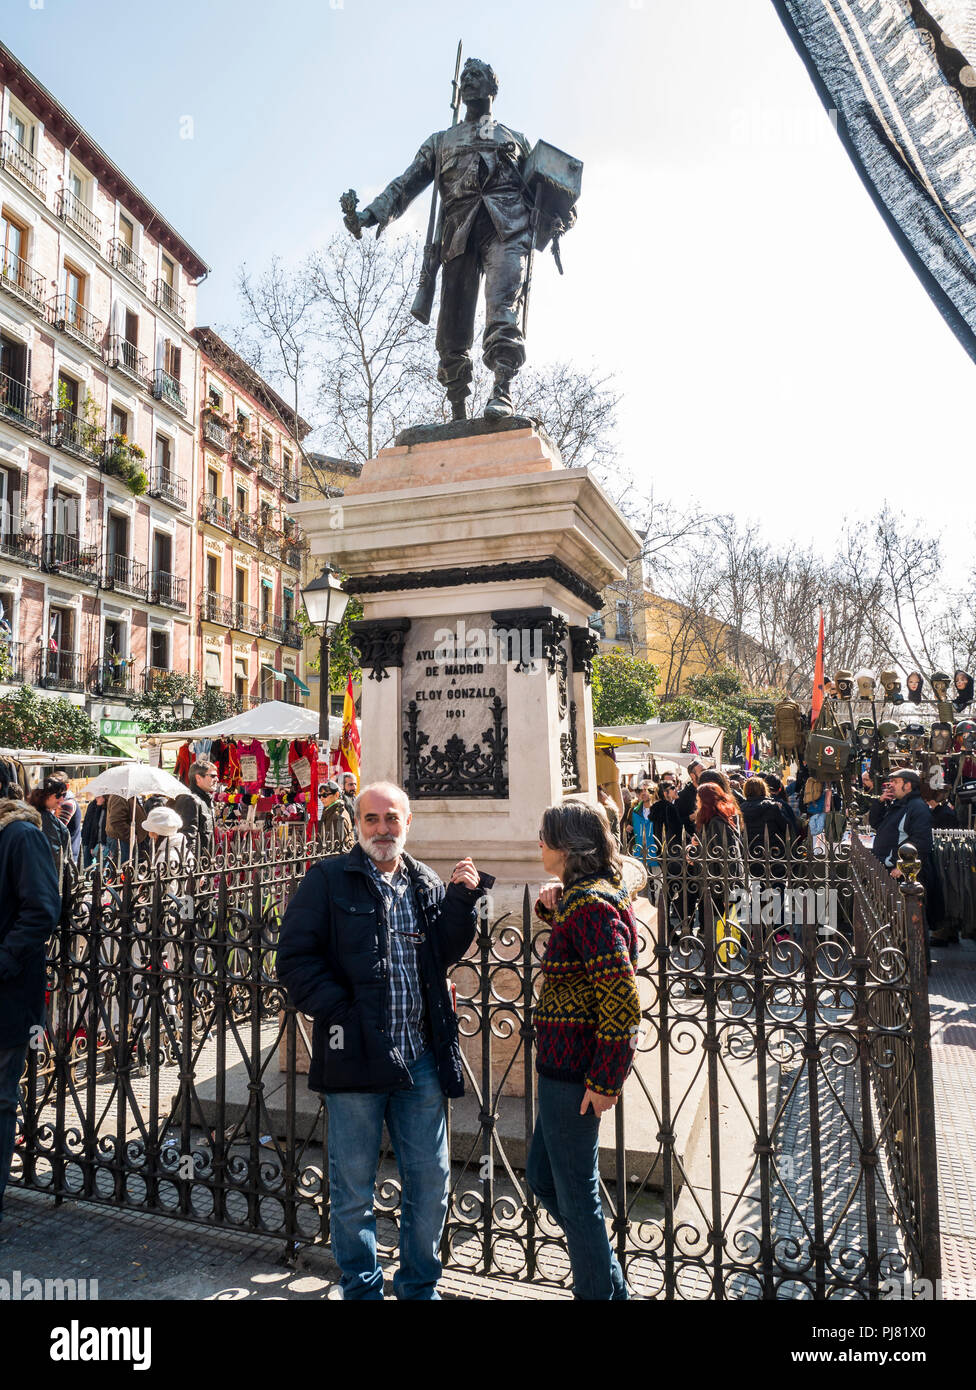 Estatua de Eloy Gonzalo. Mercado de El Rastro. Madrid. España Stock Photo